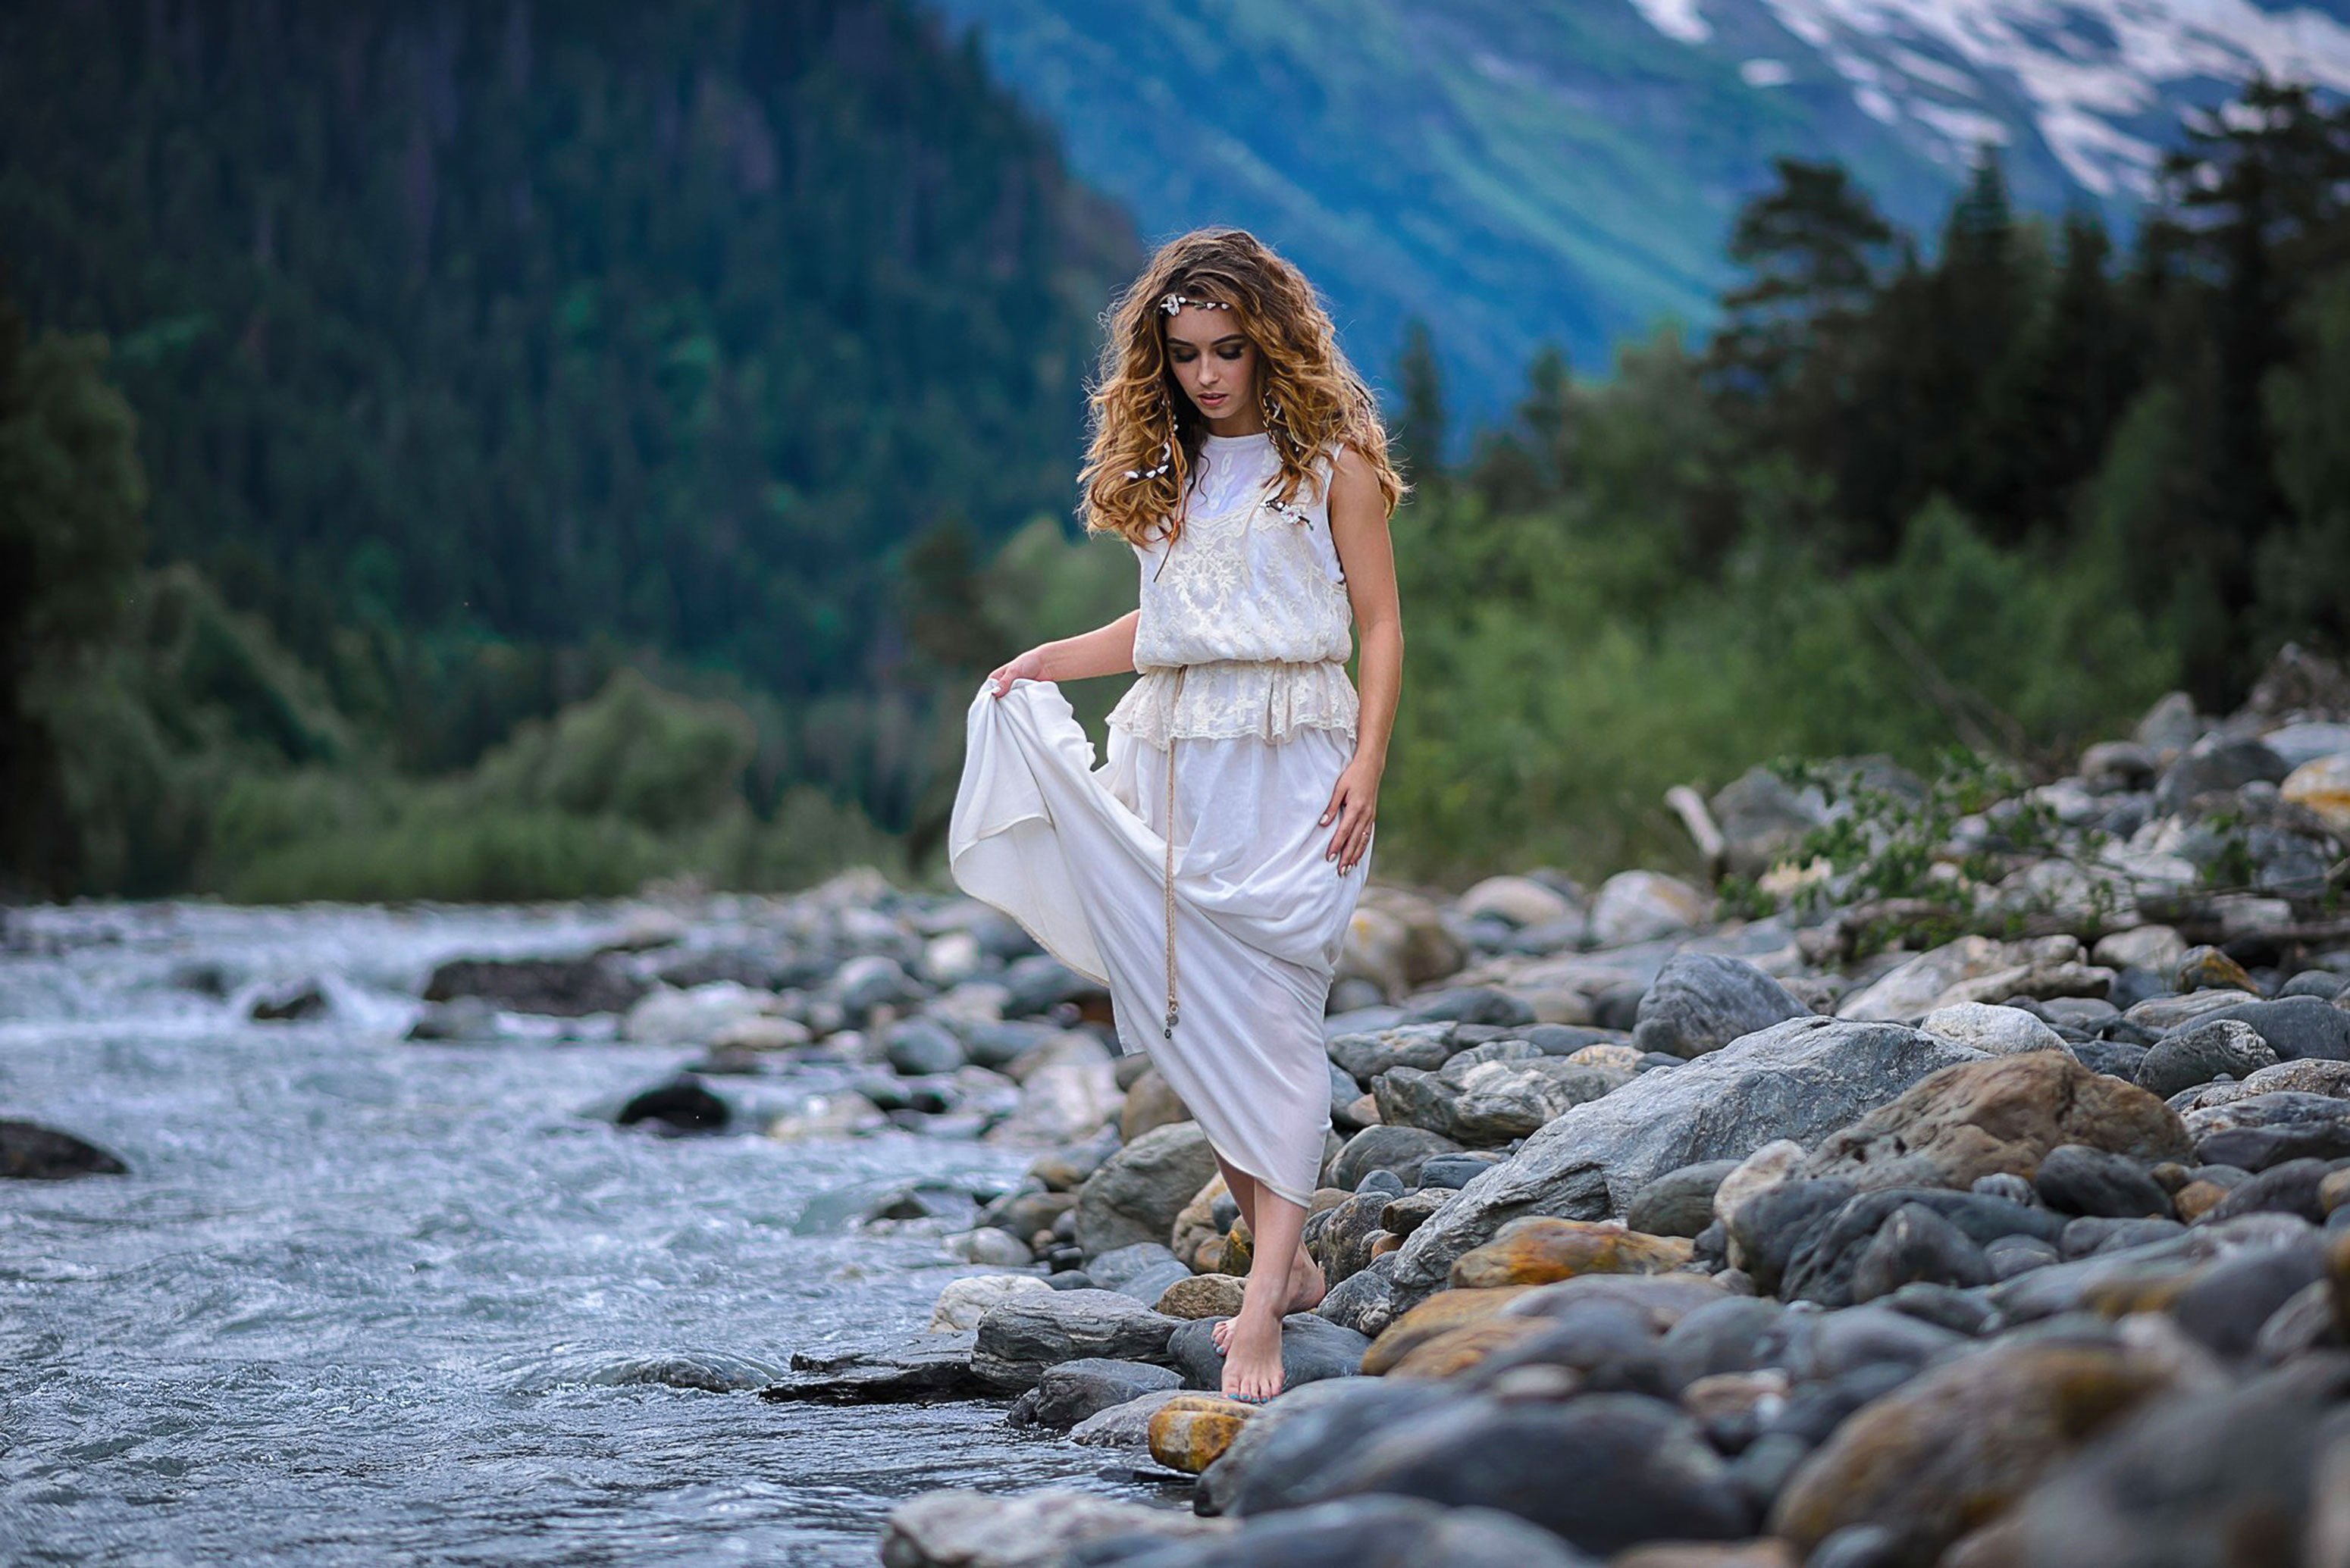 Речка красавица. Девушка у реки. Девушка в платье босиком. Фотосессия на горной речке. Девушка в платье у реки.